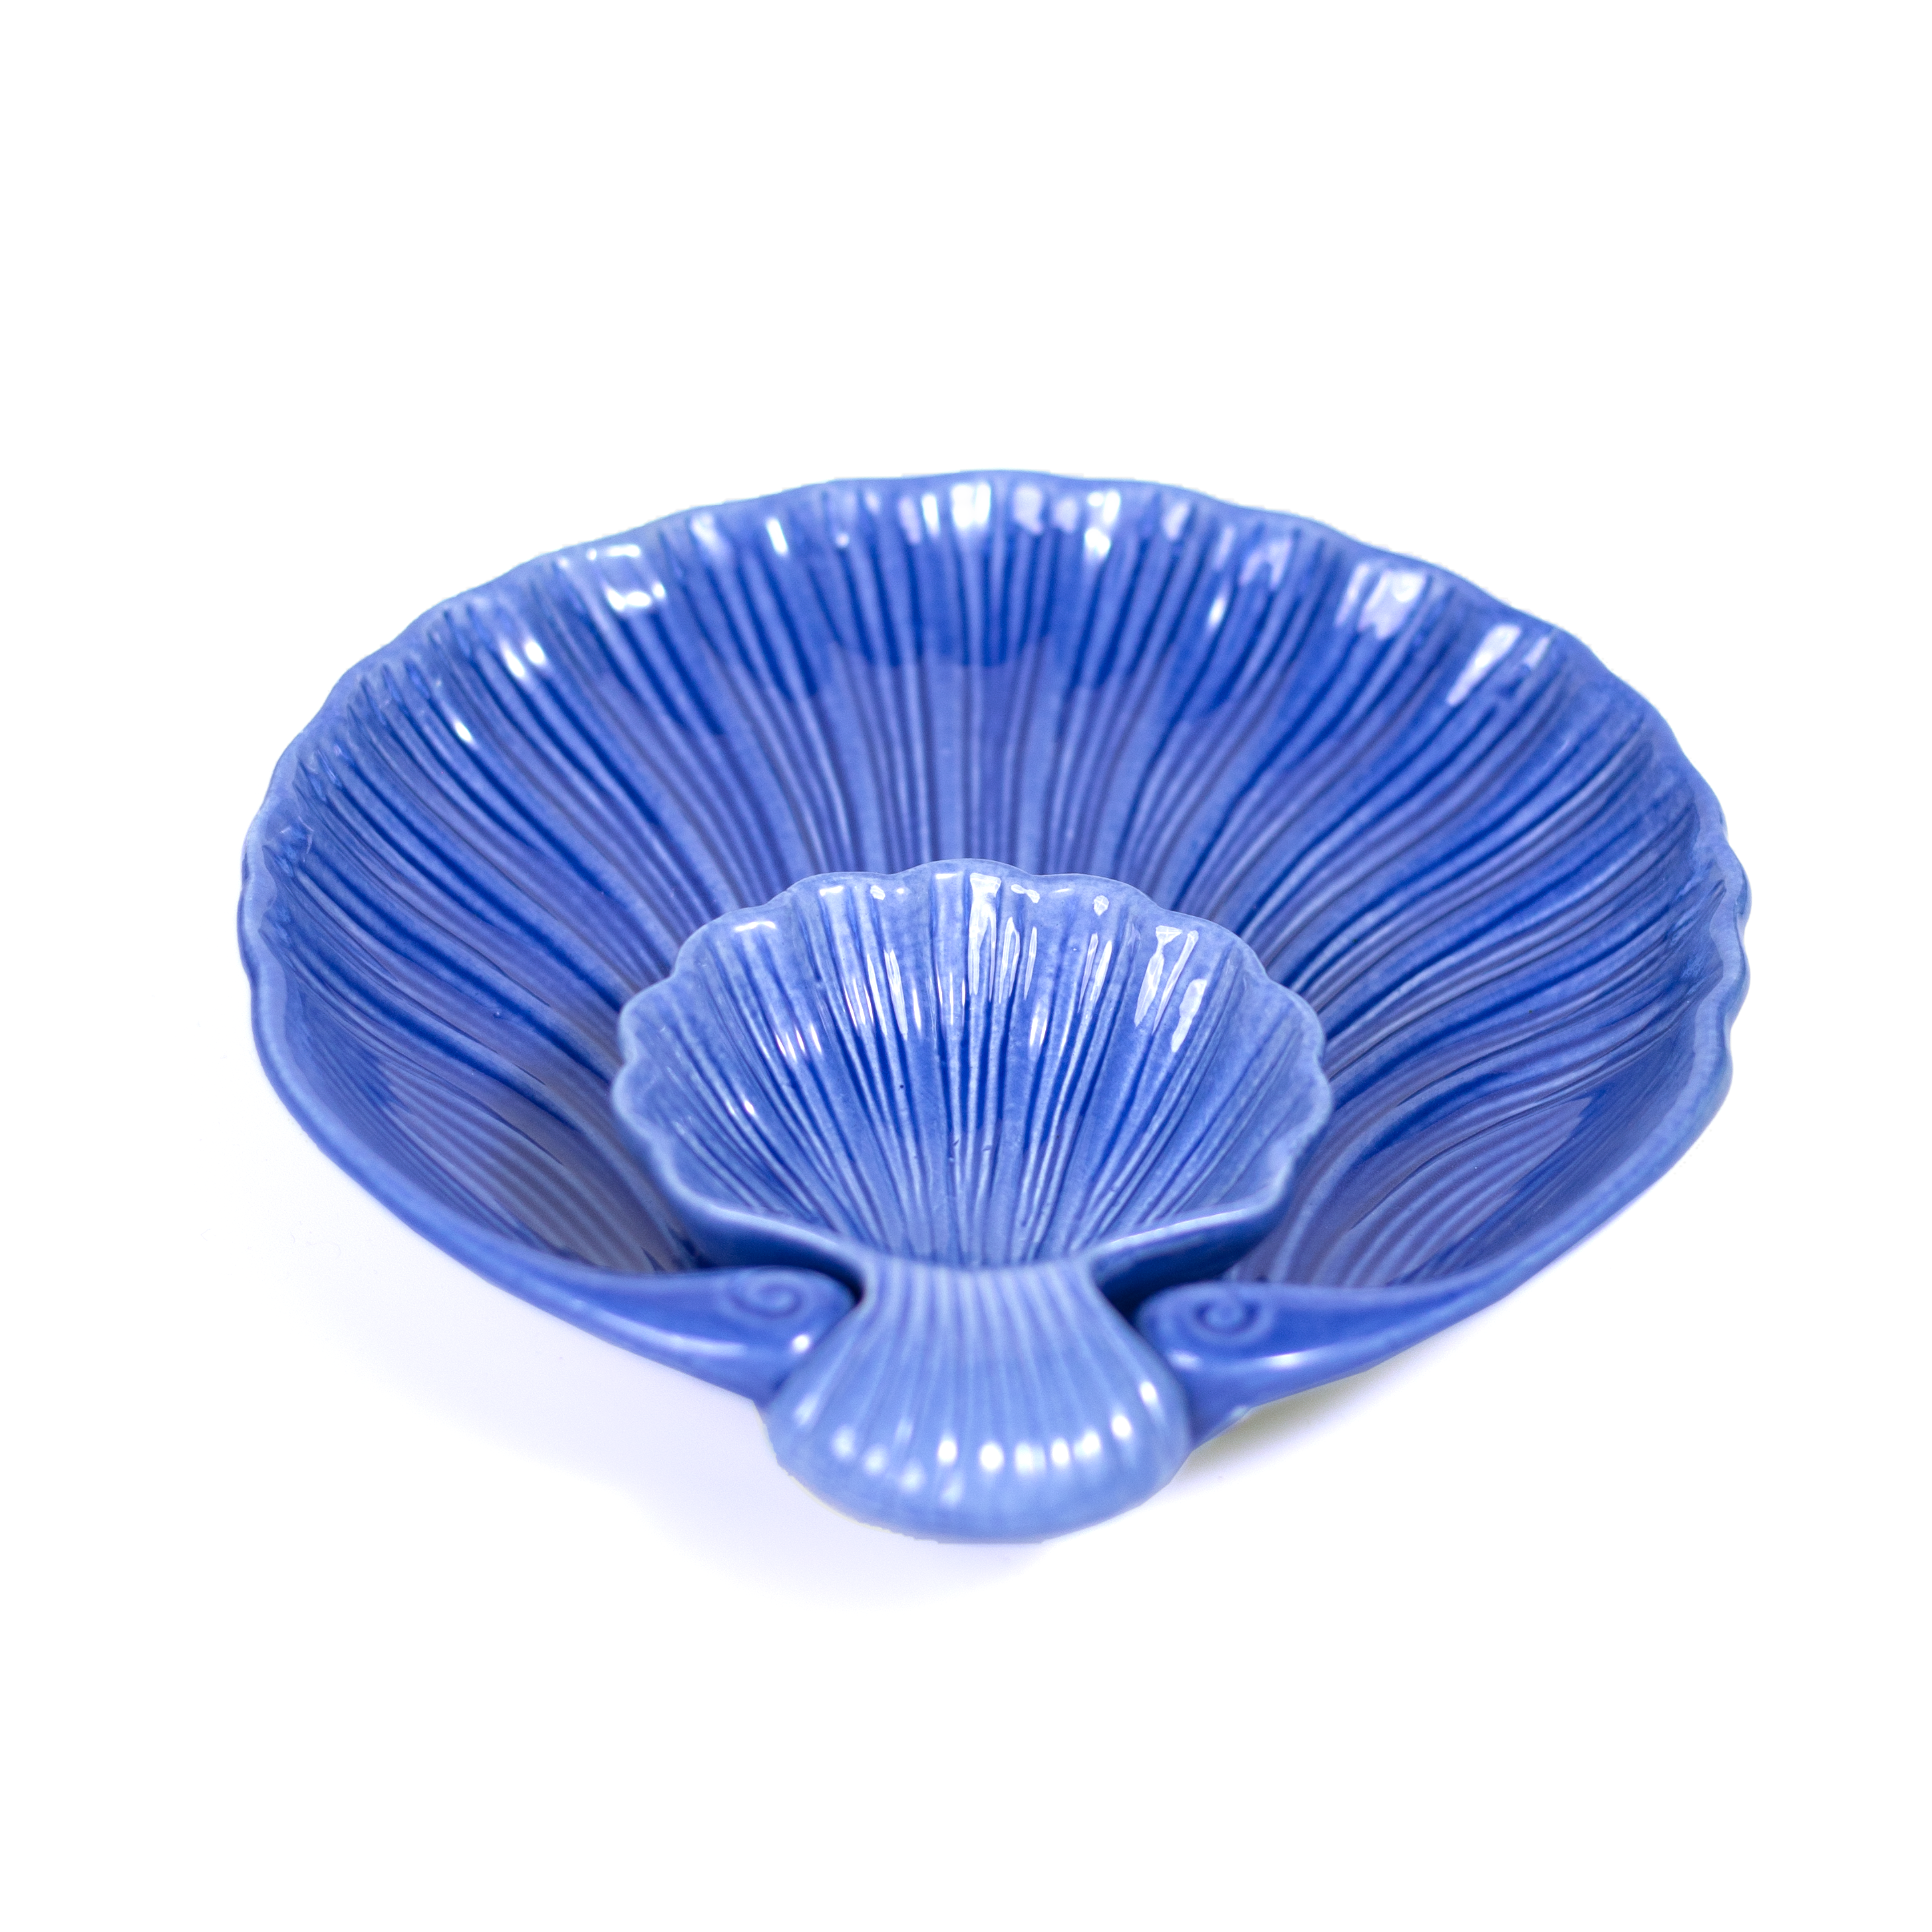 Ceramic Studio Pottery Ocean Blue Hand Glazed Shell Platter with Dip Bowl